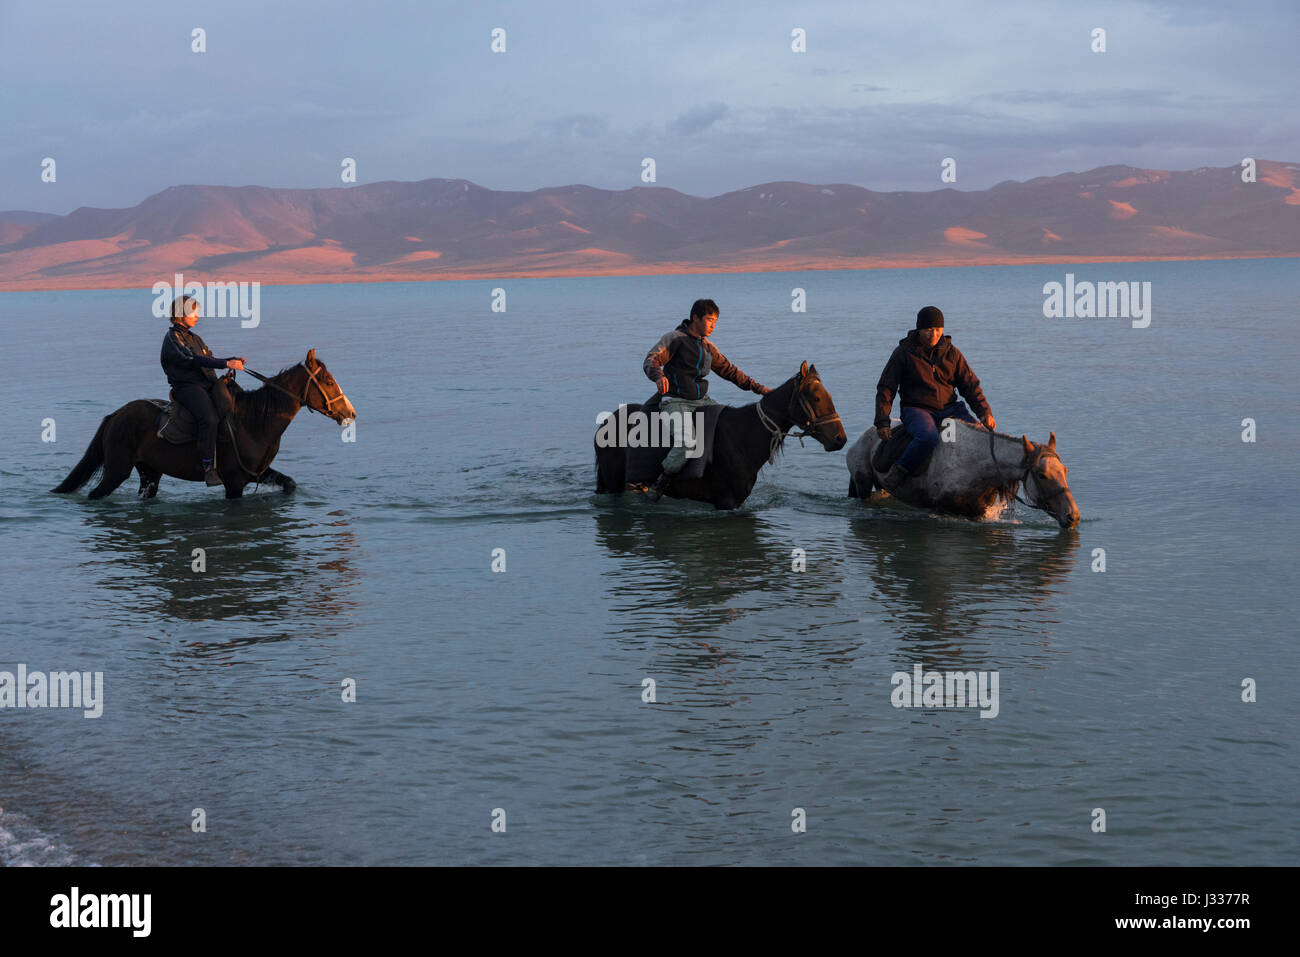 Pferde durch den malerischen See Songkul in zentralen Kirgisistan. Viele Touristen kommen in den Bereich für Reiten und trekking-Ausflüge. Stockfoto